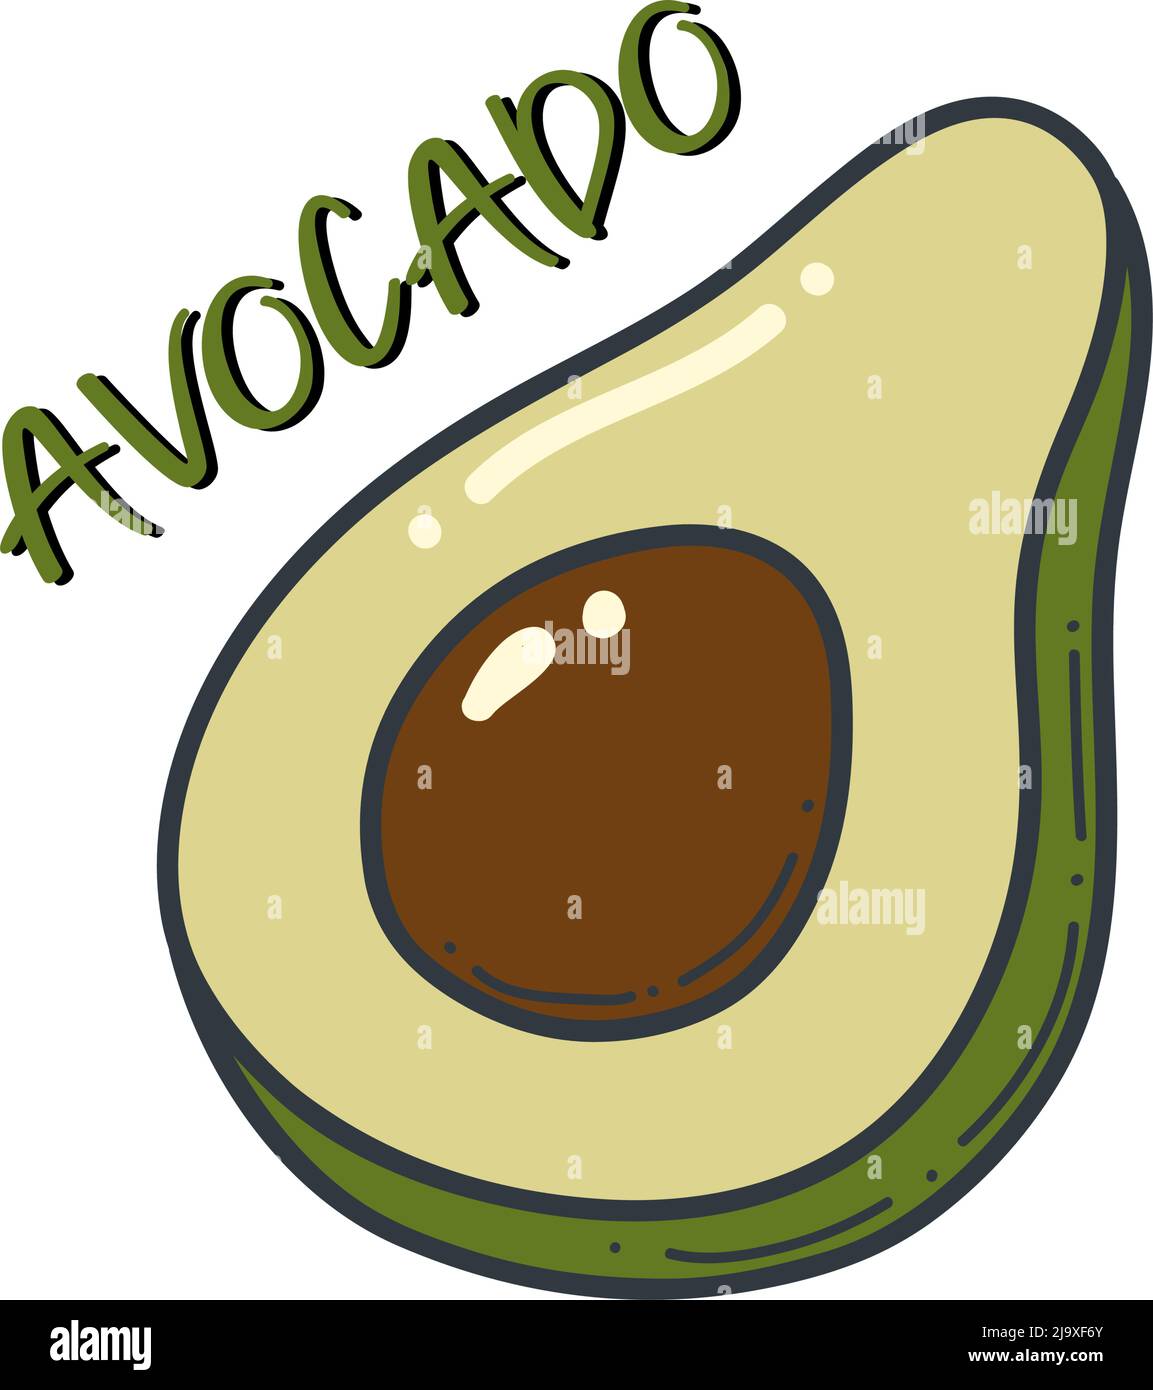 Icône de contour d'avocat. Logo illustration de fruits et légumes biologiques isolés. Illustration de Vecteur